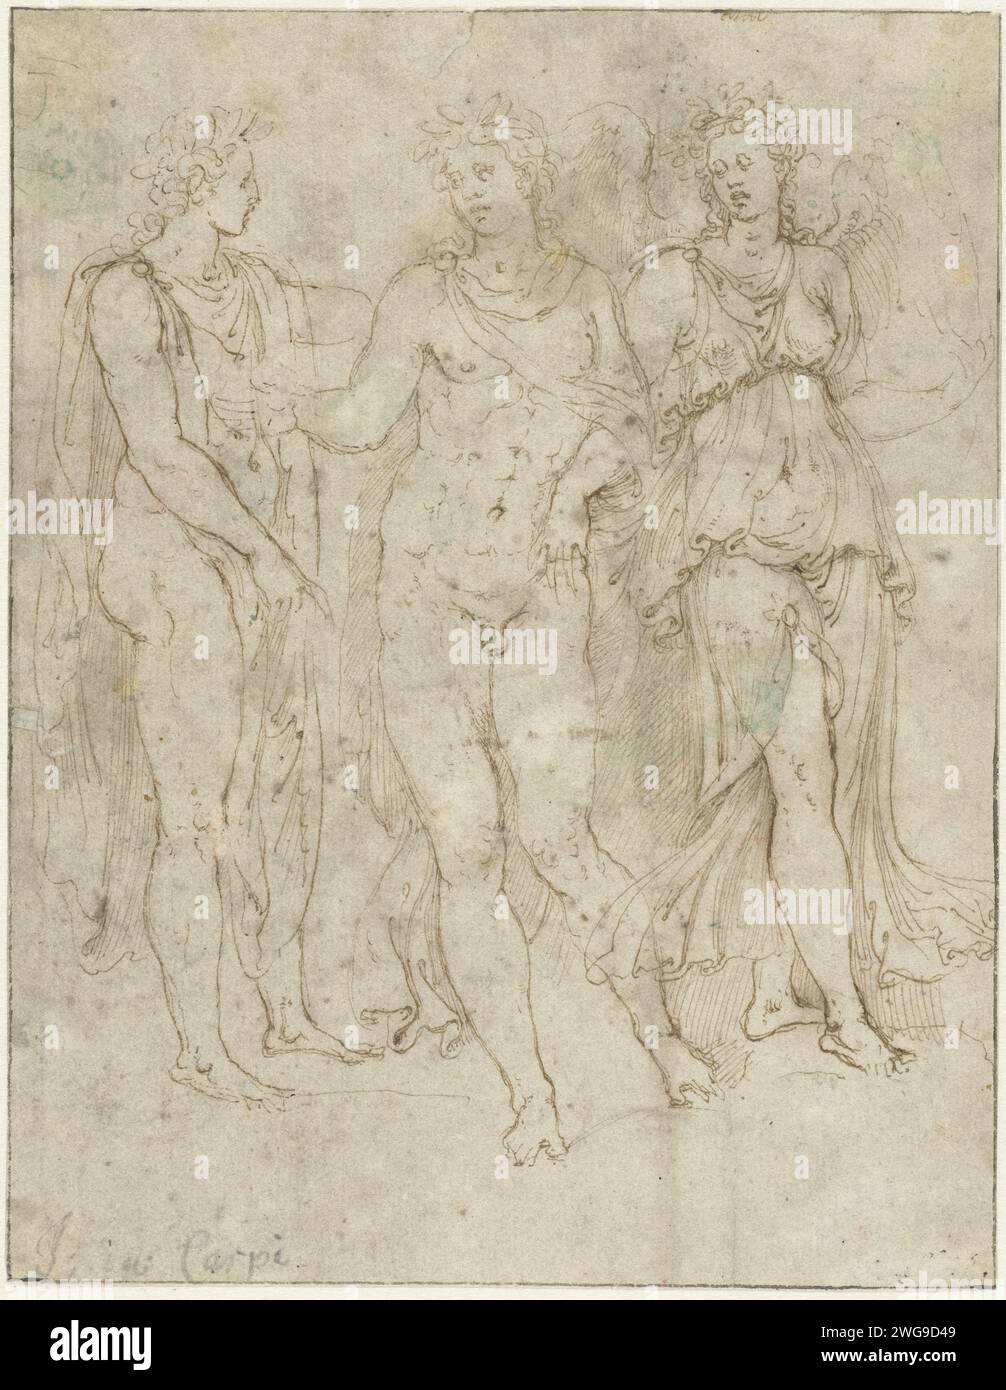 Victoria conduce un uomo acclamato lontano da un amico, Girolamo da Carpi, 1549 - 1553 carta da disegno. penna a inchiostro Foto Stock